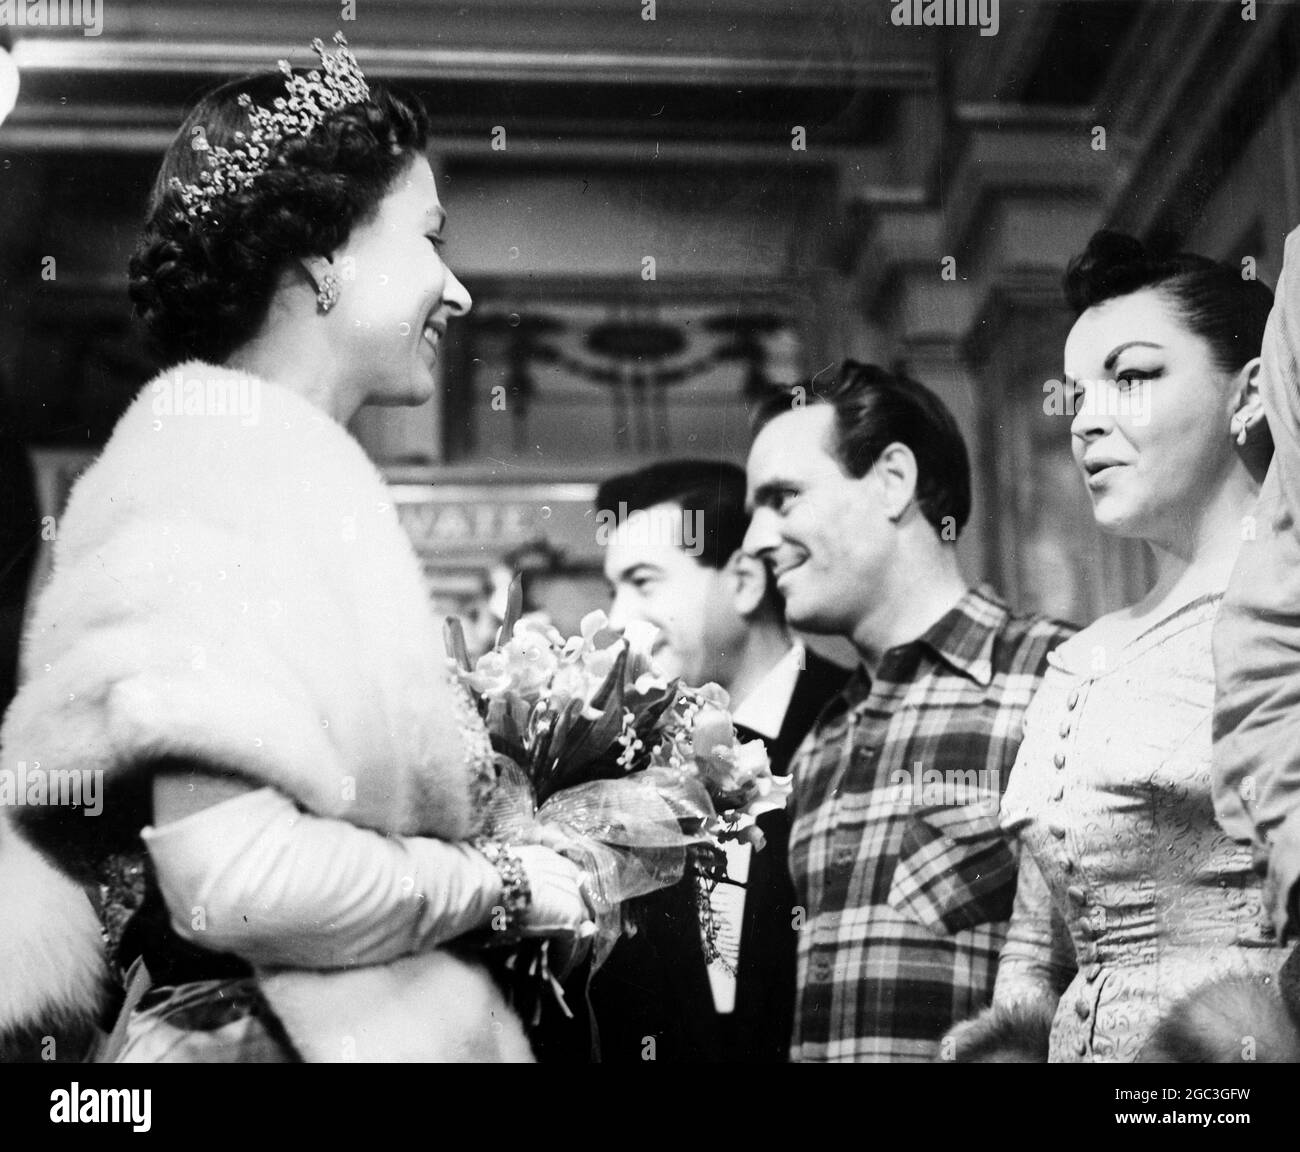 Königin Elizabeth II. Unterhielt sich mit den Stars im Theaterfoyer. Sie wird lächelnd dargestellt, als sie mit Judy Garland sprach - 19. November 1959. ©TopFoto Stockfoto